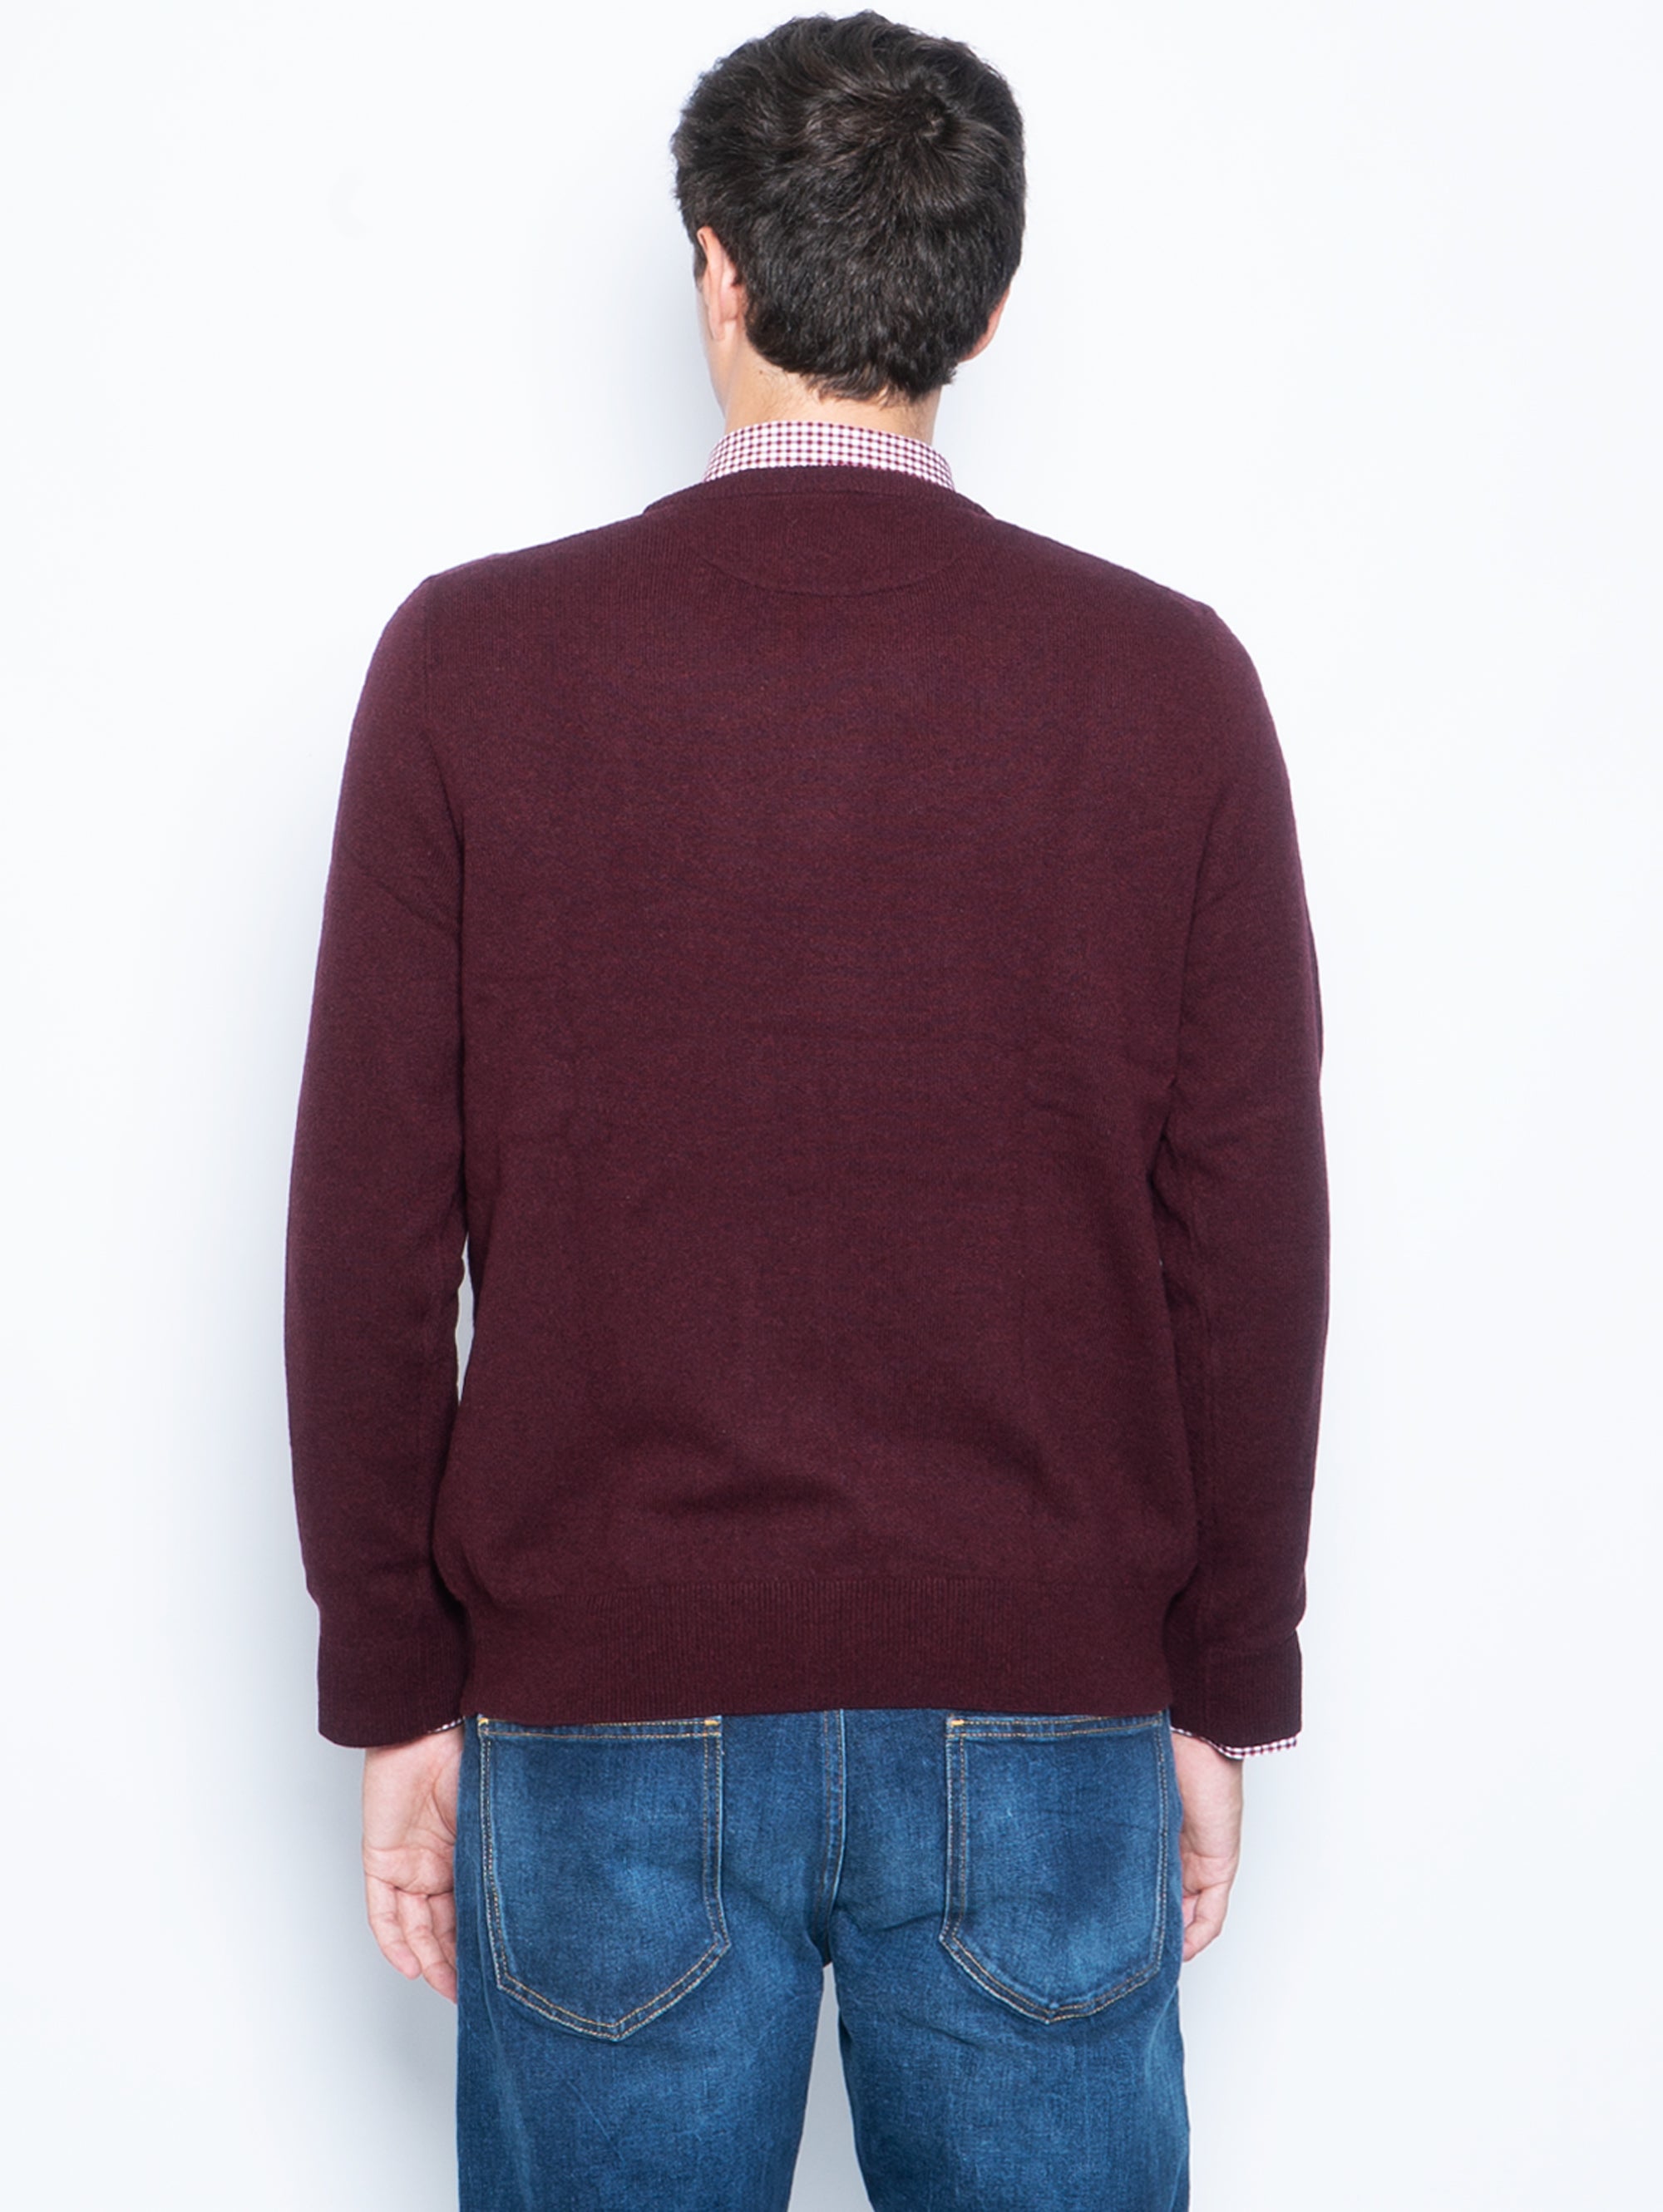 Crewneck sweater in maroon wool